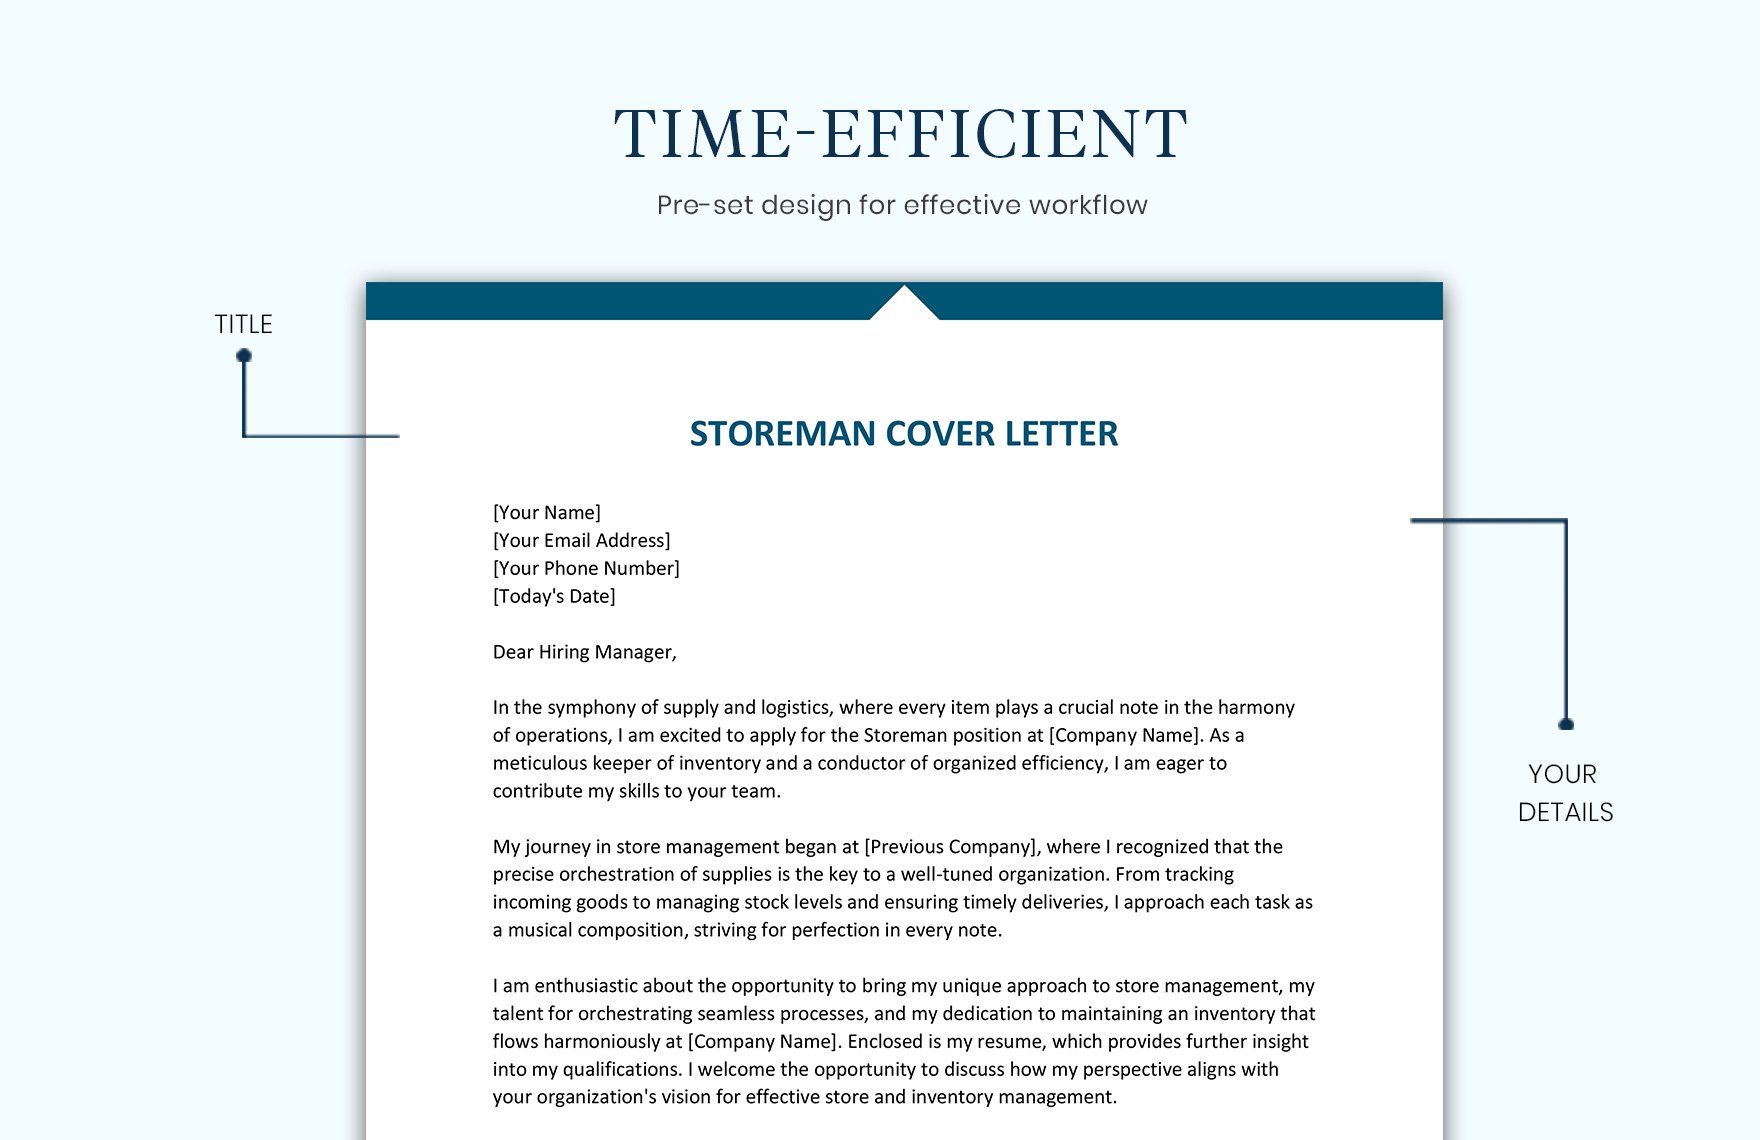 Storeman Cover Letter